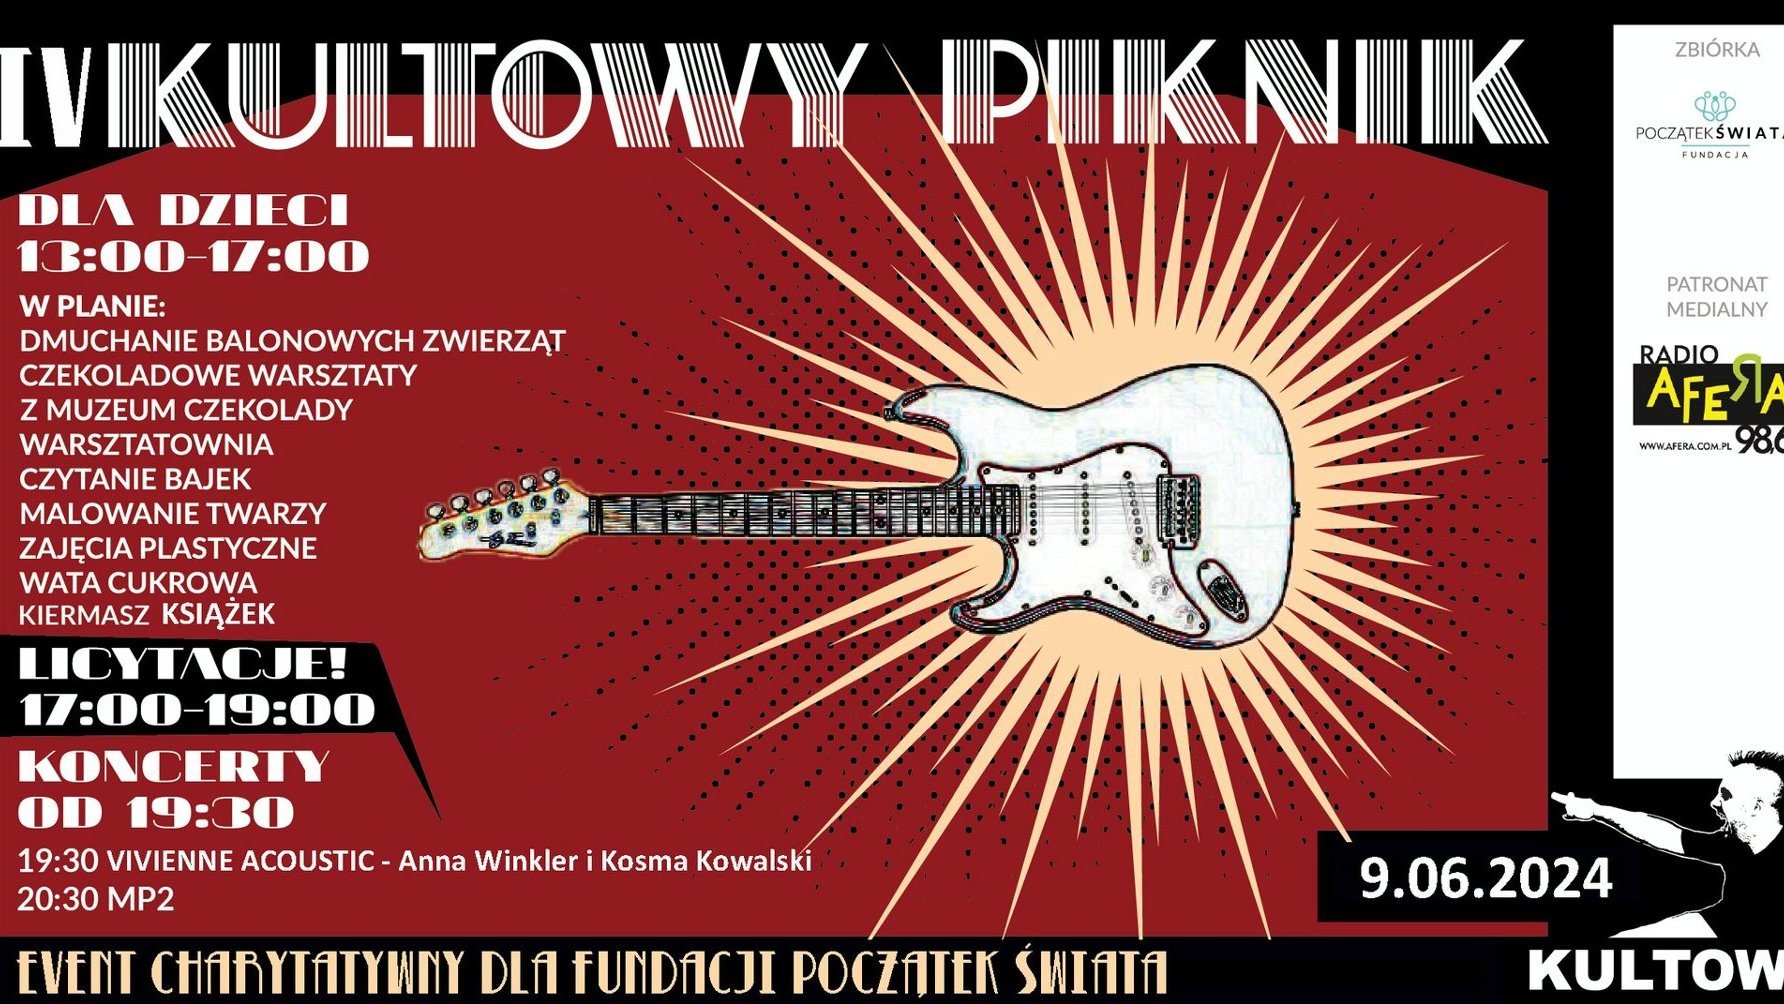 Plakat z informacjami o wydarzeniu i rysunkiem gitary.